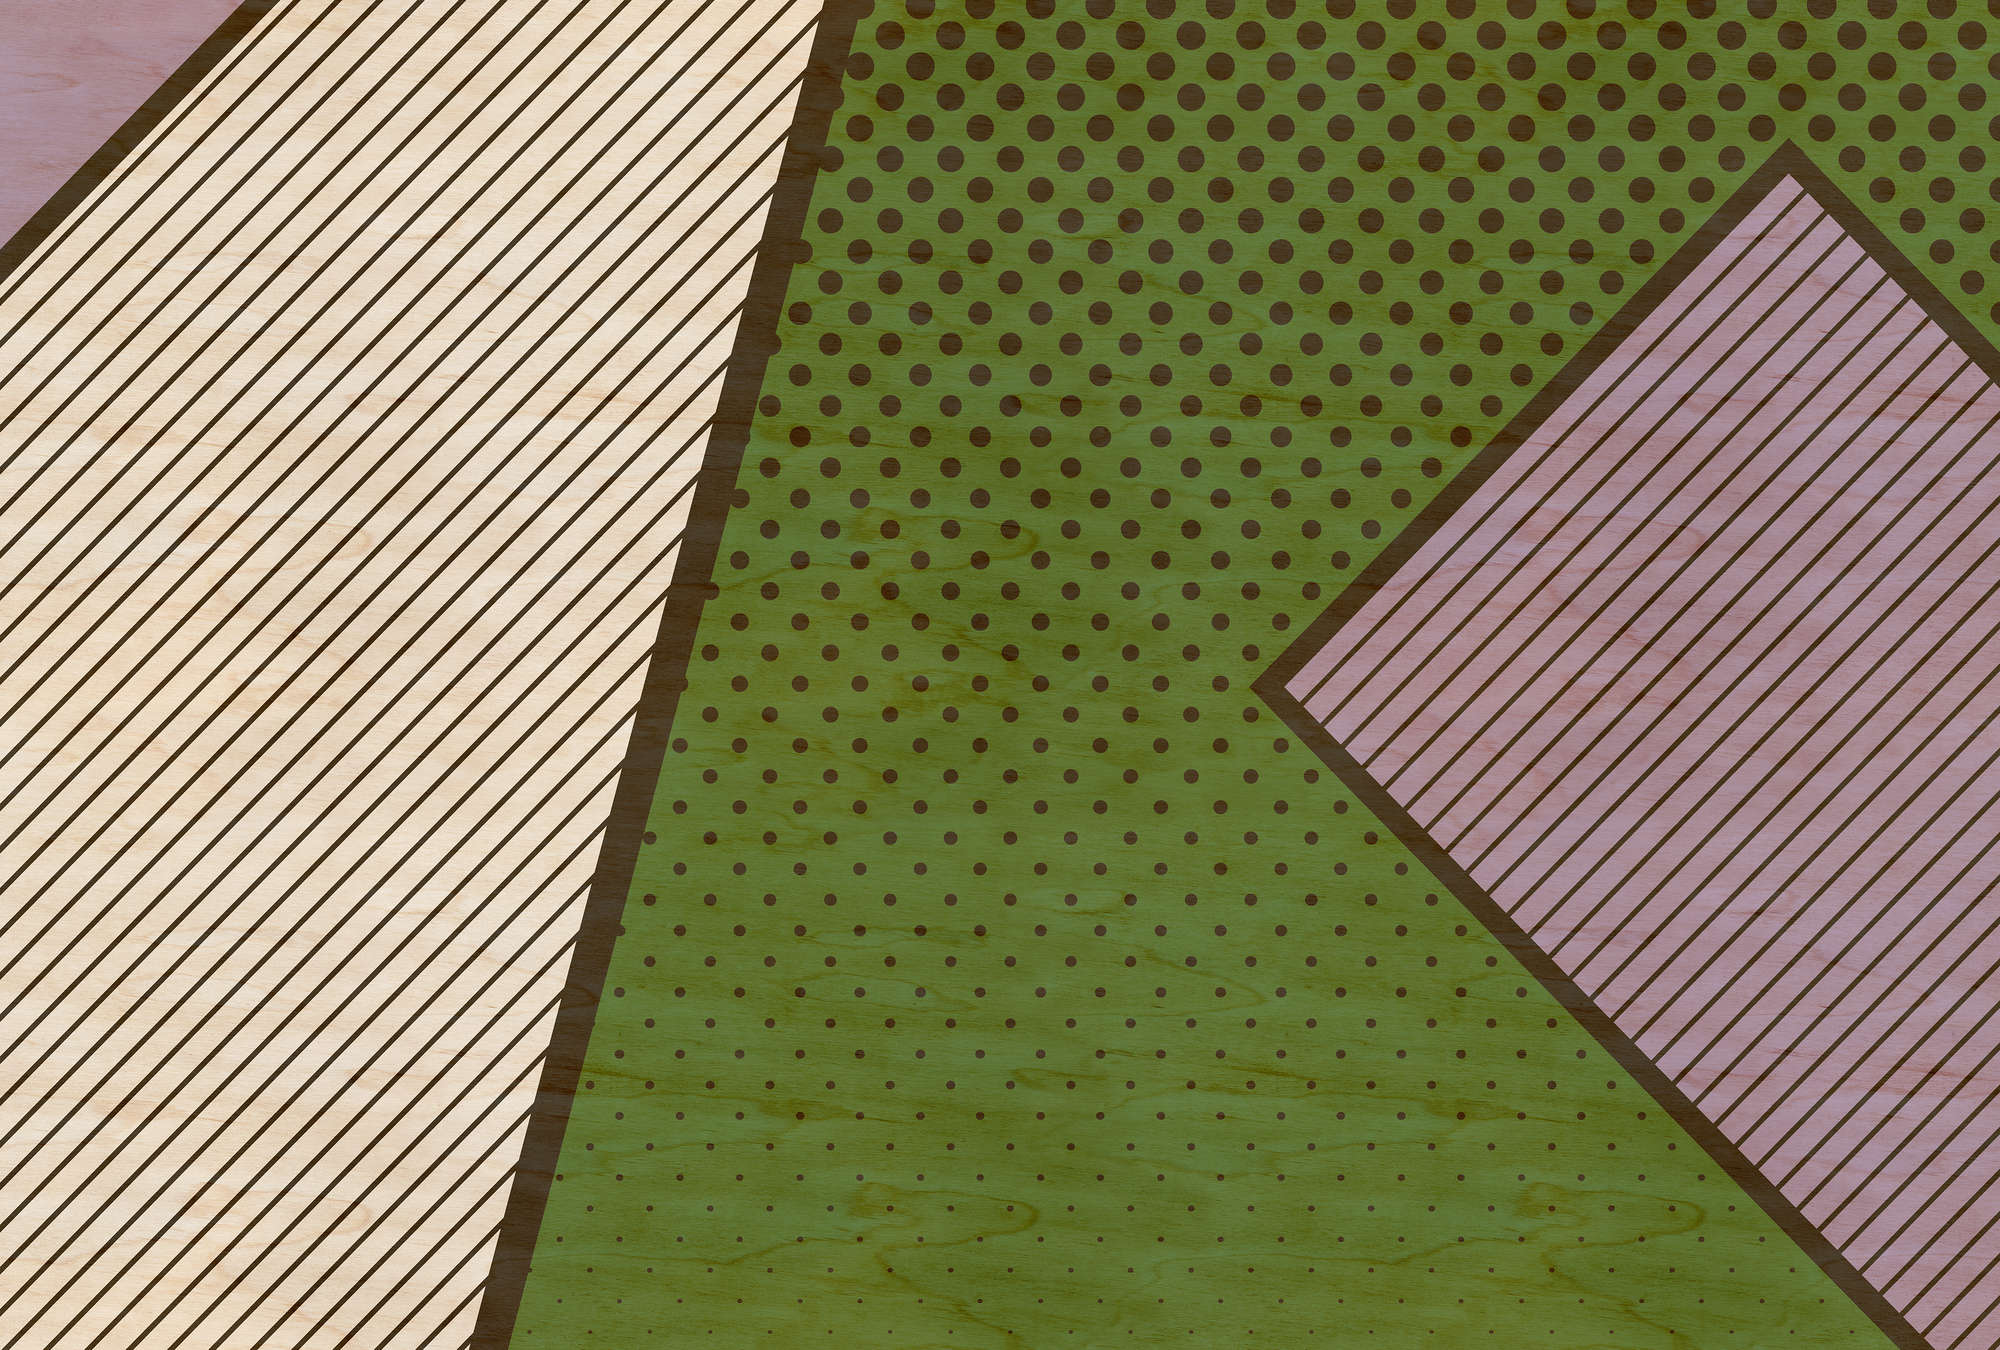             Vogelbende 3 - Abstract behang in multiplexstructuur met veelkleurige vlakken - Beige, Groen | Premium glad vlies
        